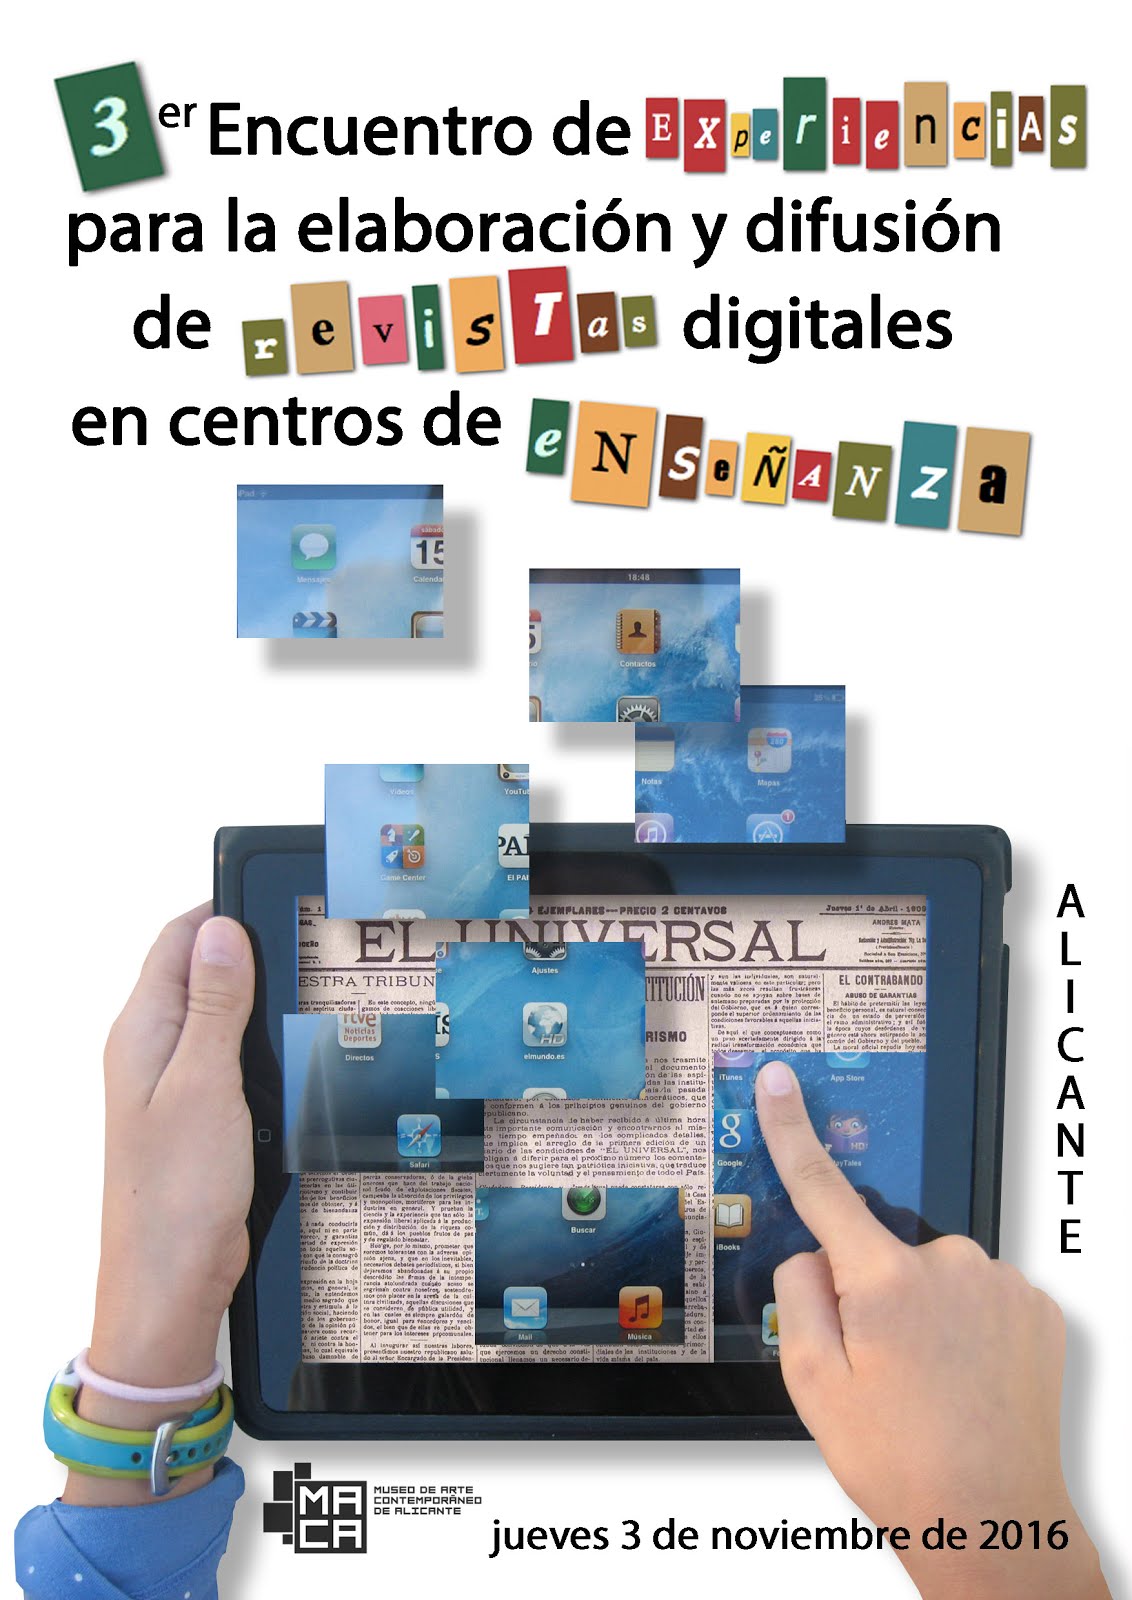 3er encuentro de experiencias para la elaboración y difusión de revistas digitales en centros de en